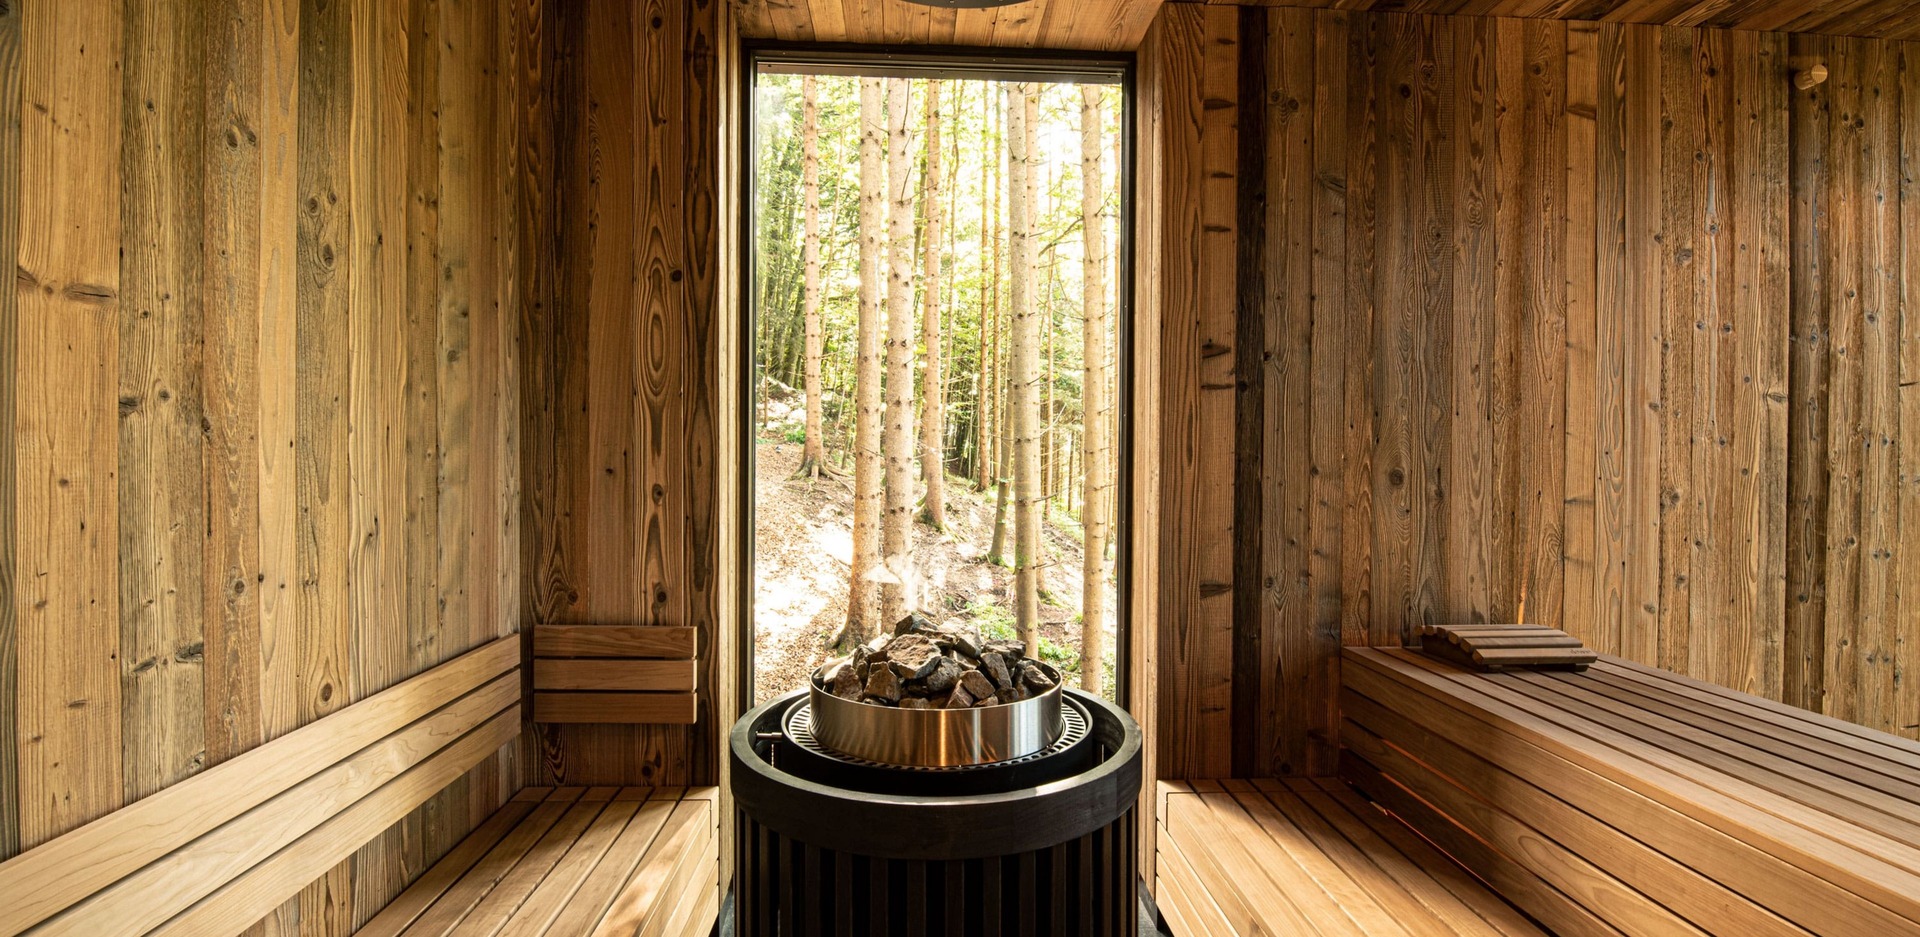 Hotel Fischerwirt/ Wald SPA forest sauna